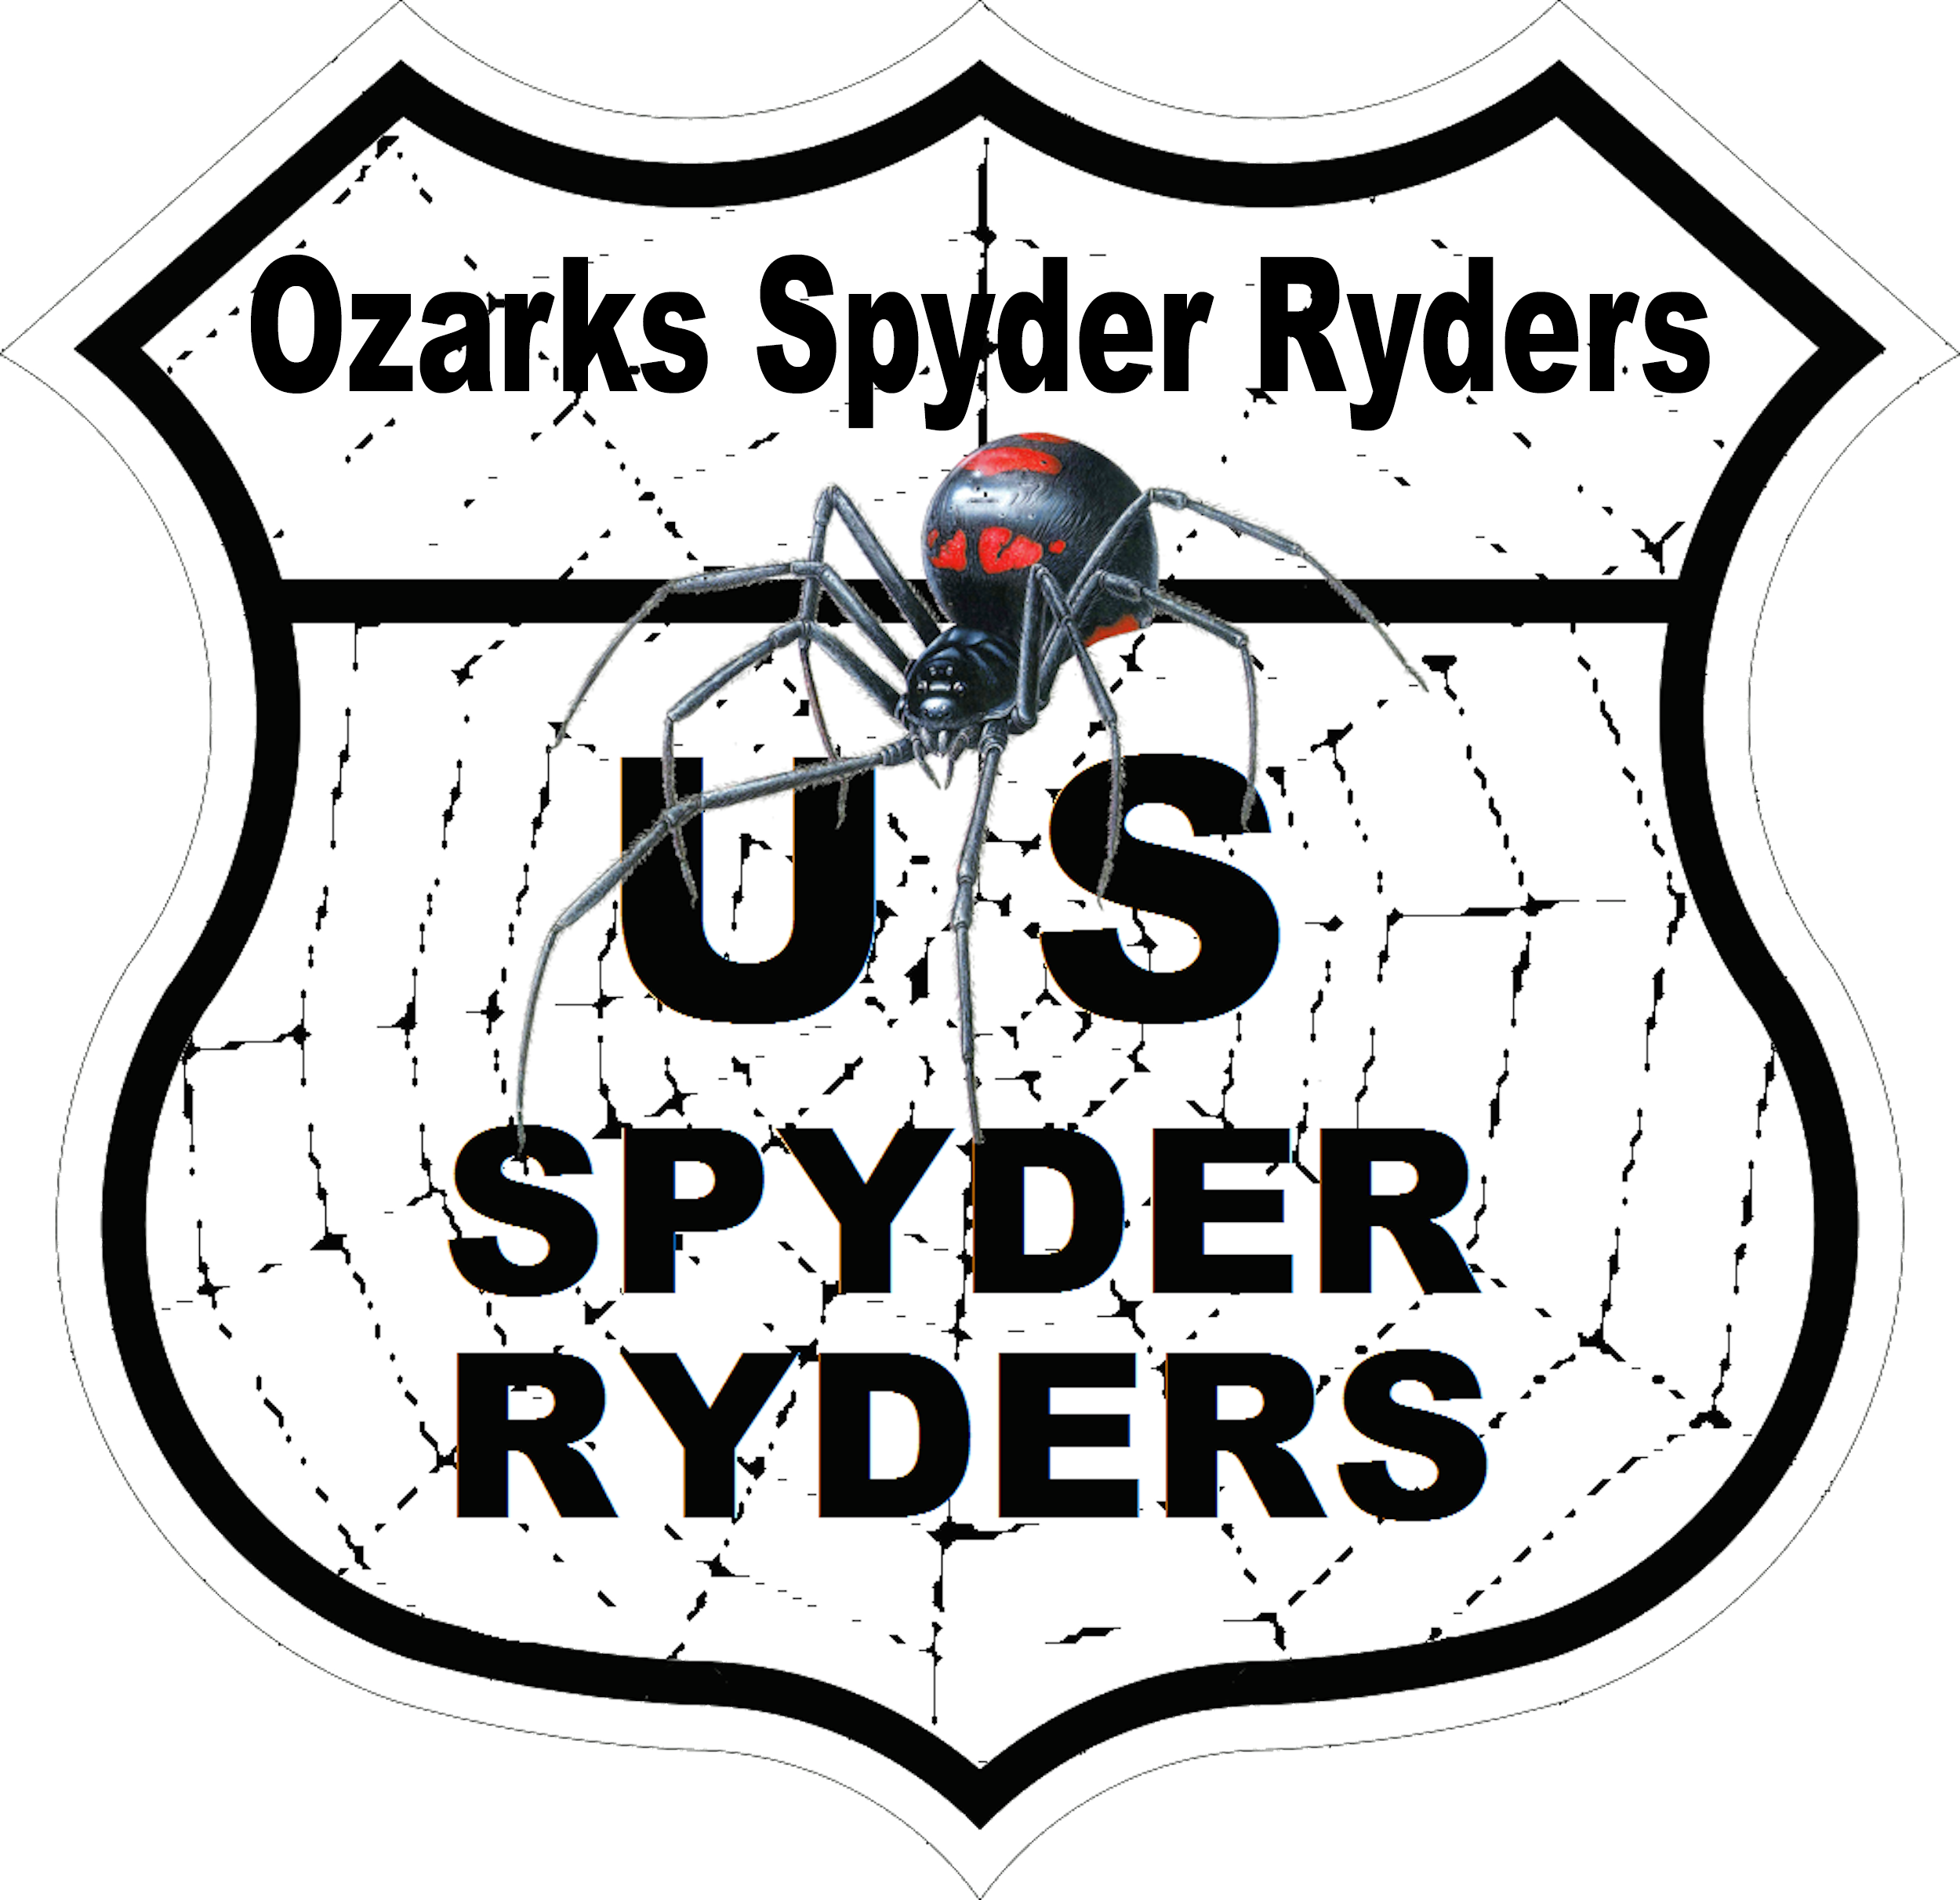 US_Spyder_Ryder_MO_Ozark.png